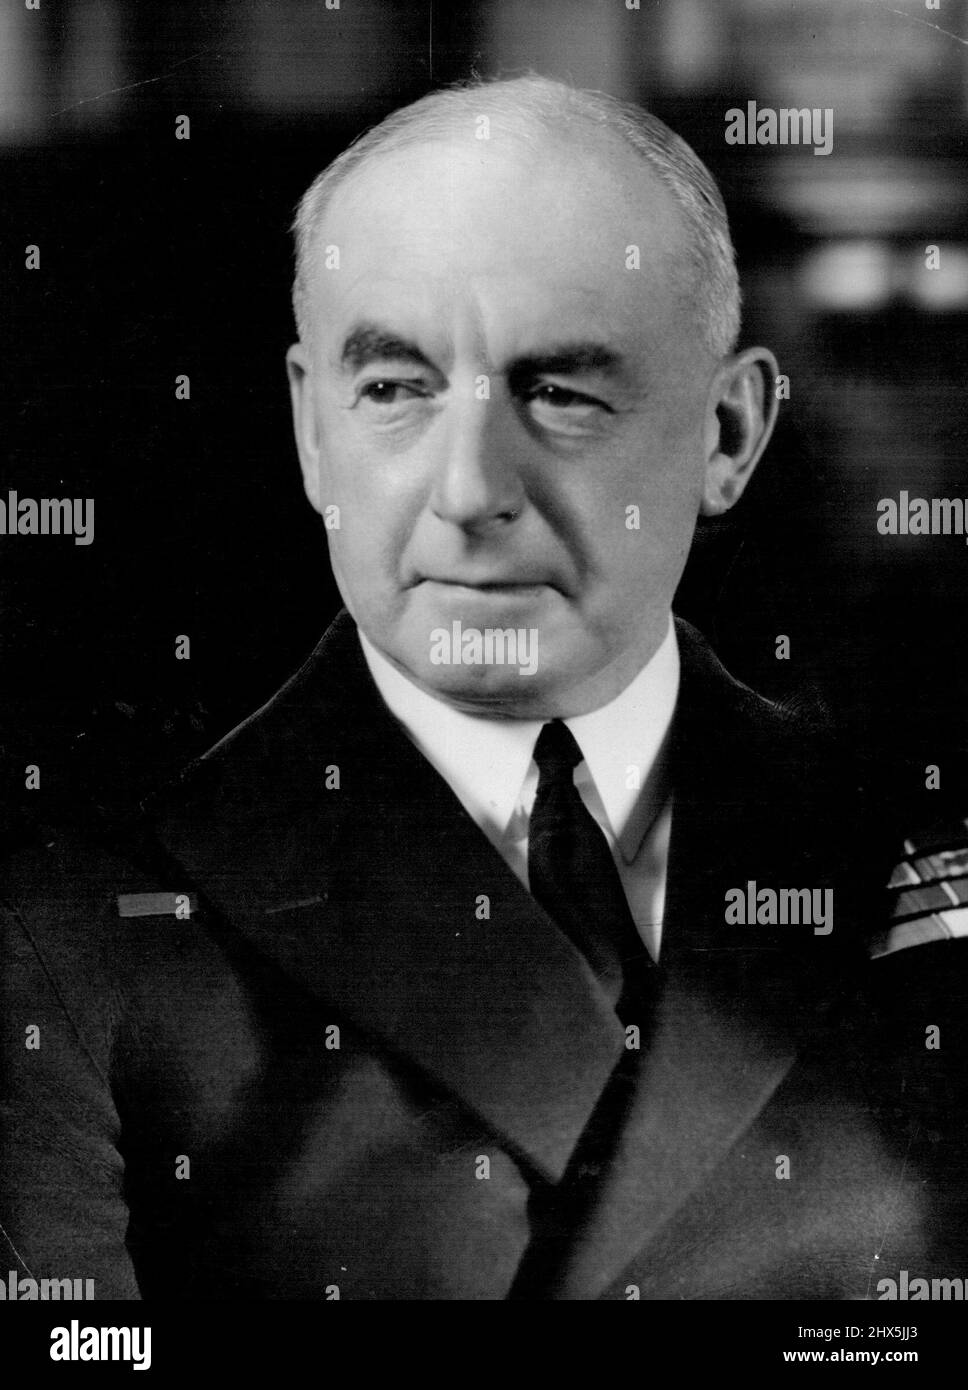 Premier seigneur de la mer, amiral Sir Dudley Pound : forcé de prendre la décision la plus désagréable de sa carrière. 23 février 1940. Banque D'Images